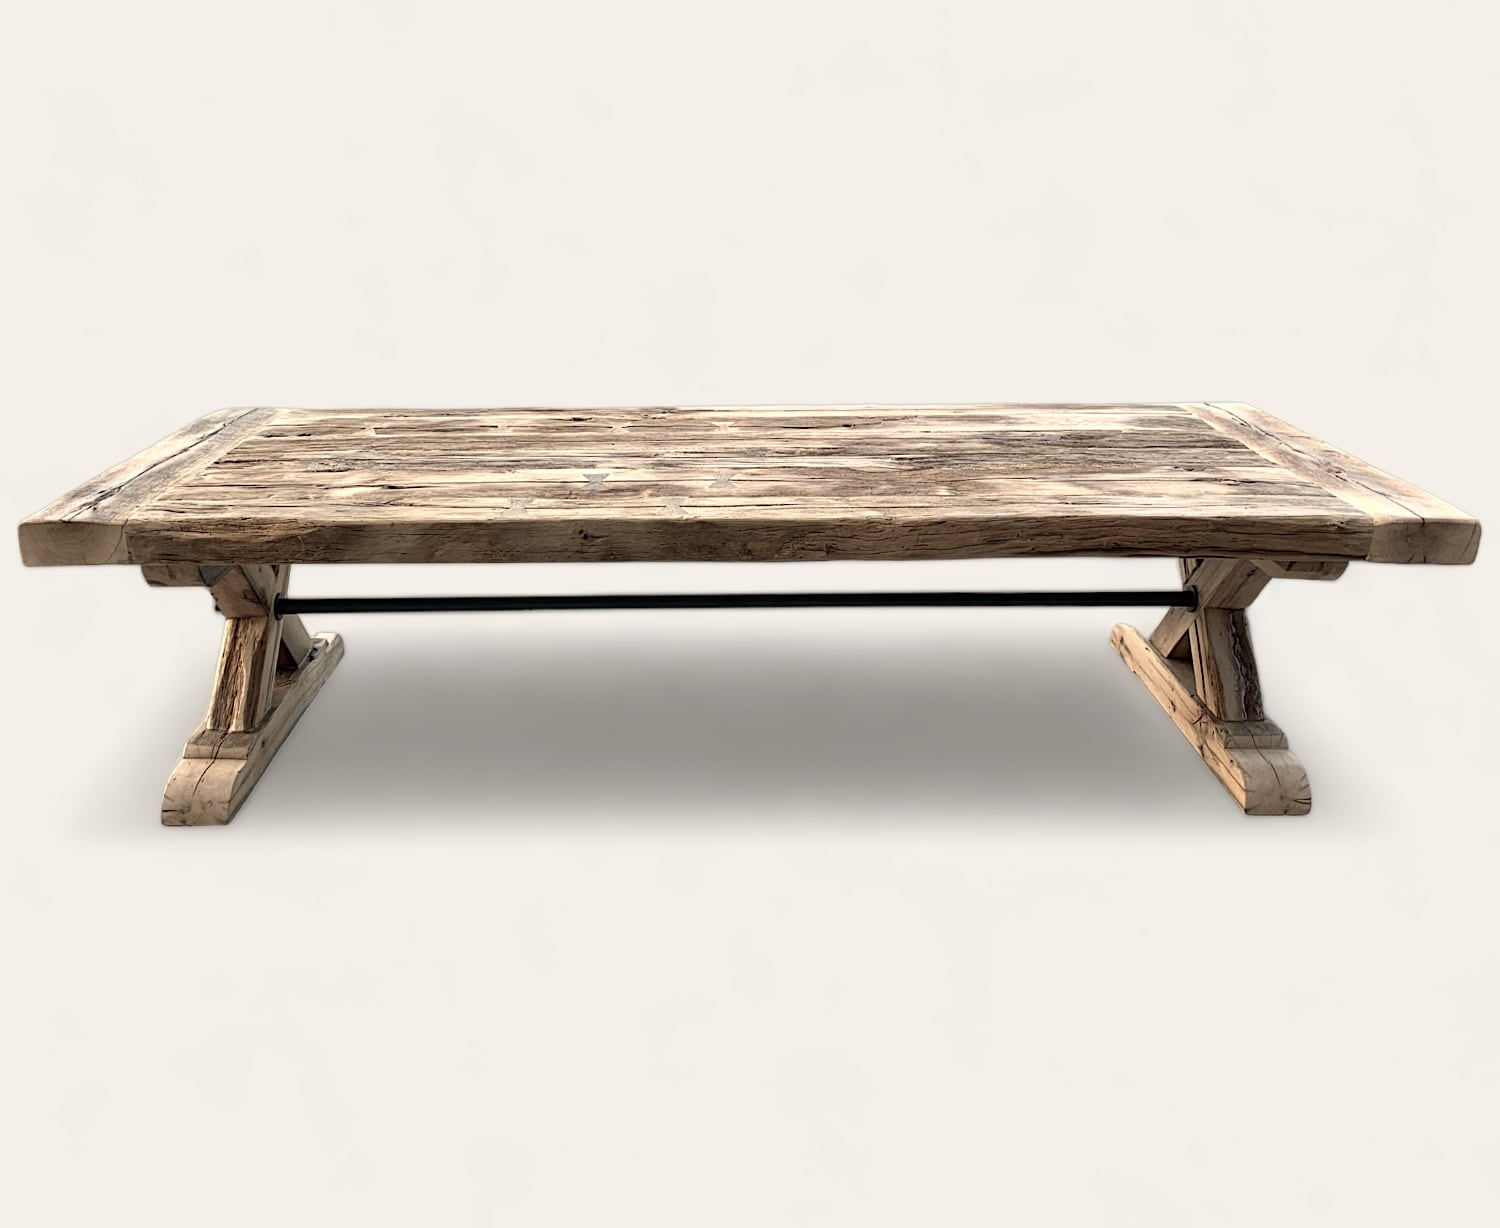 Une table basse rustique en bois avec une base en métal.